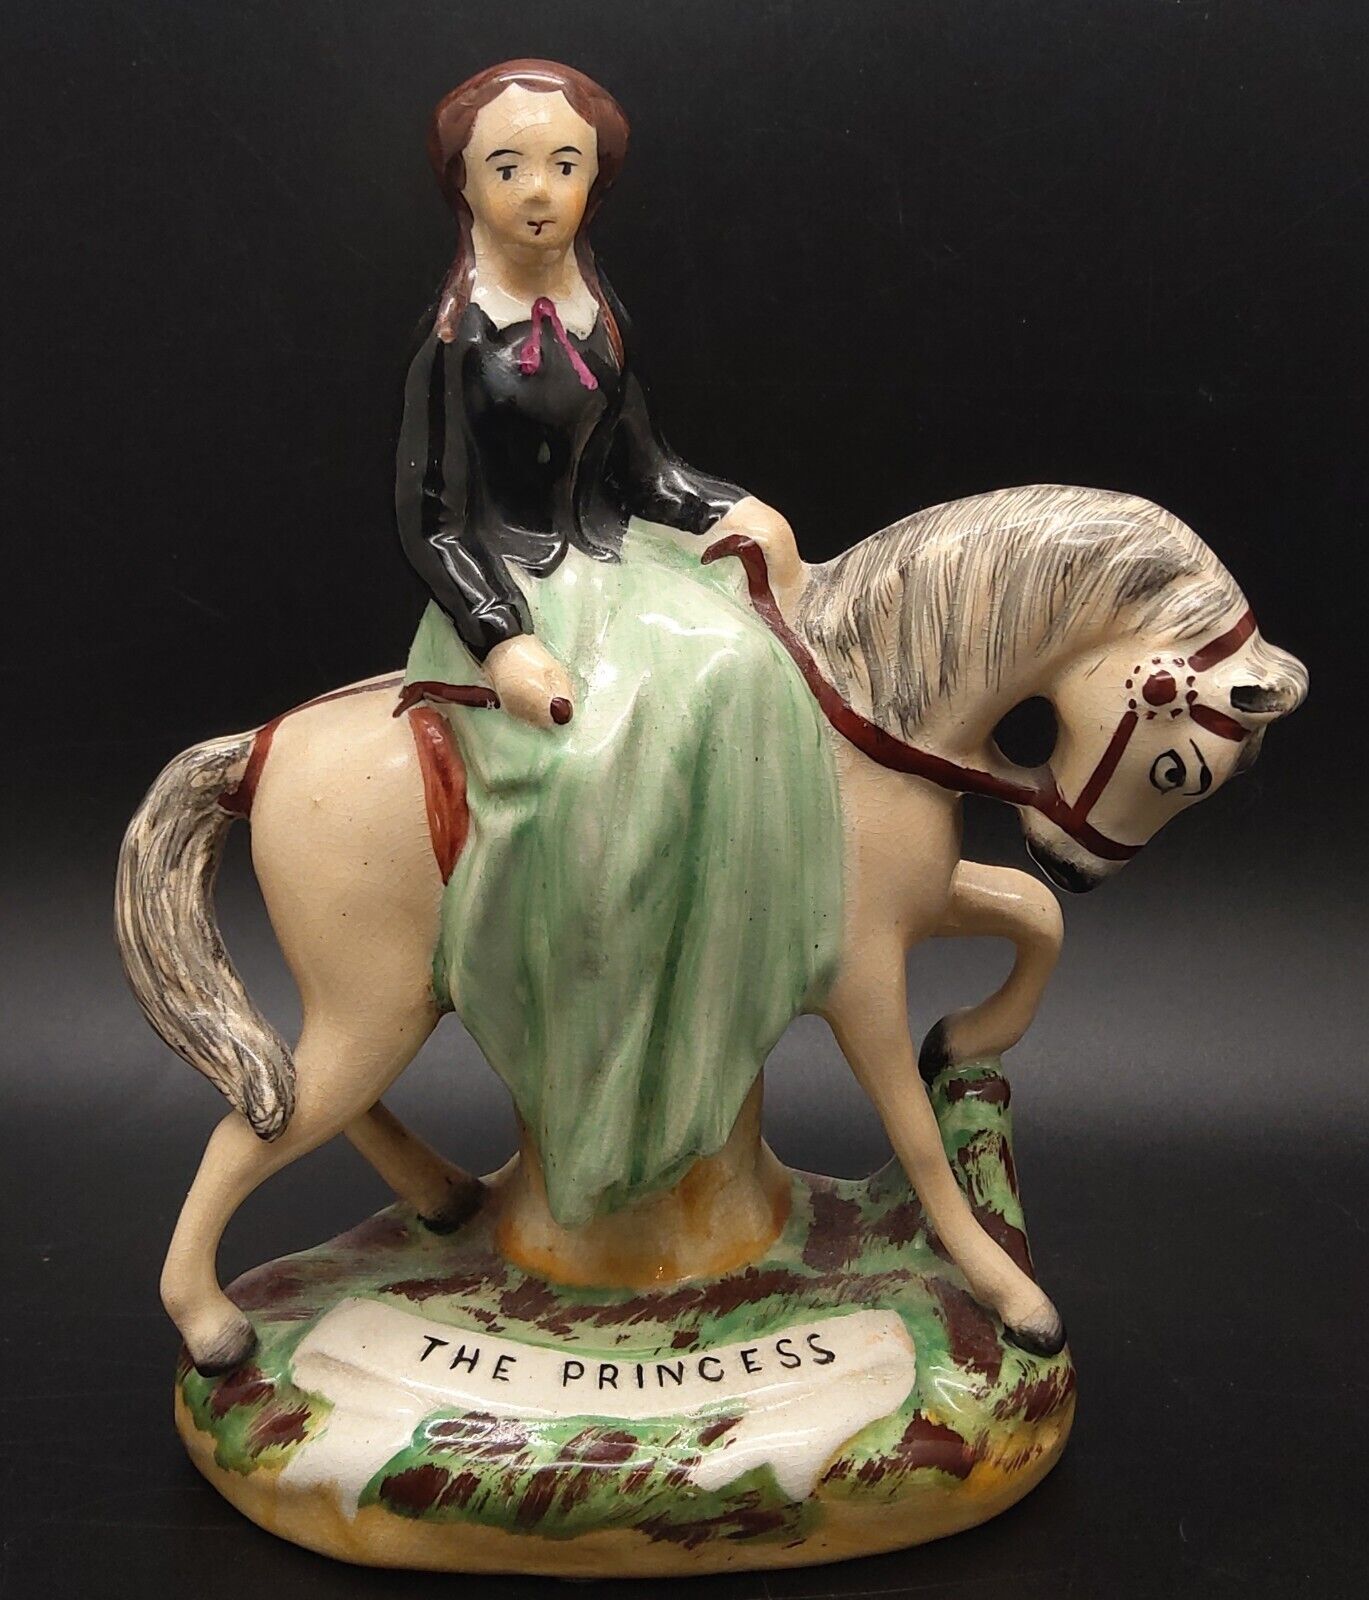 RARE Antique Staffordshire England Figurine The Princess on Horse